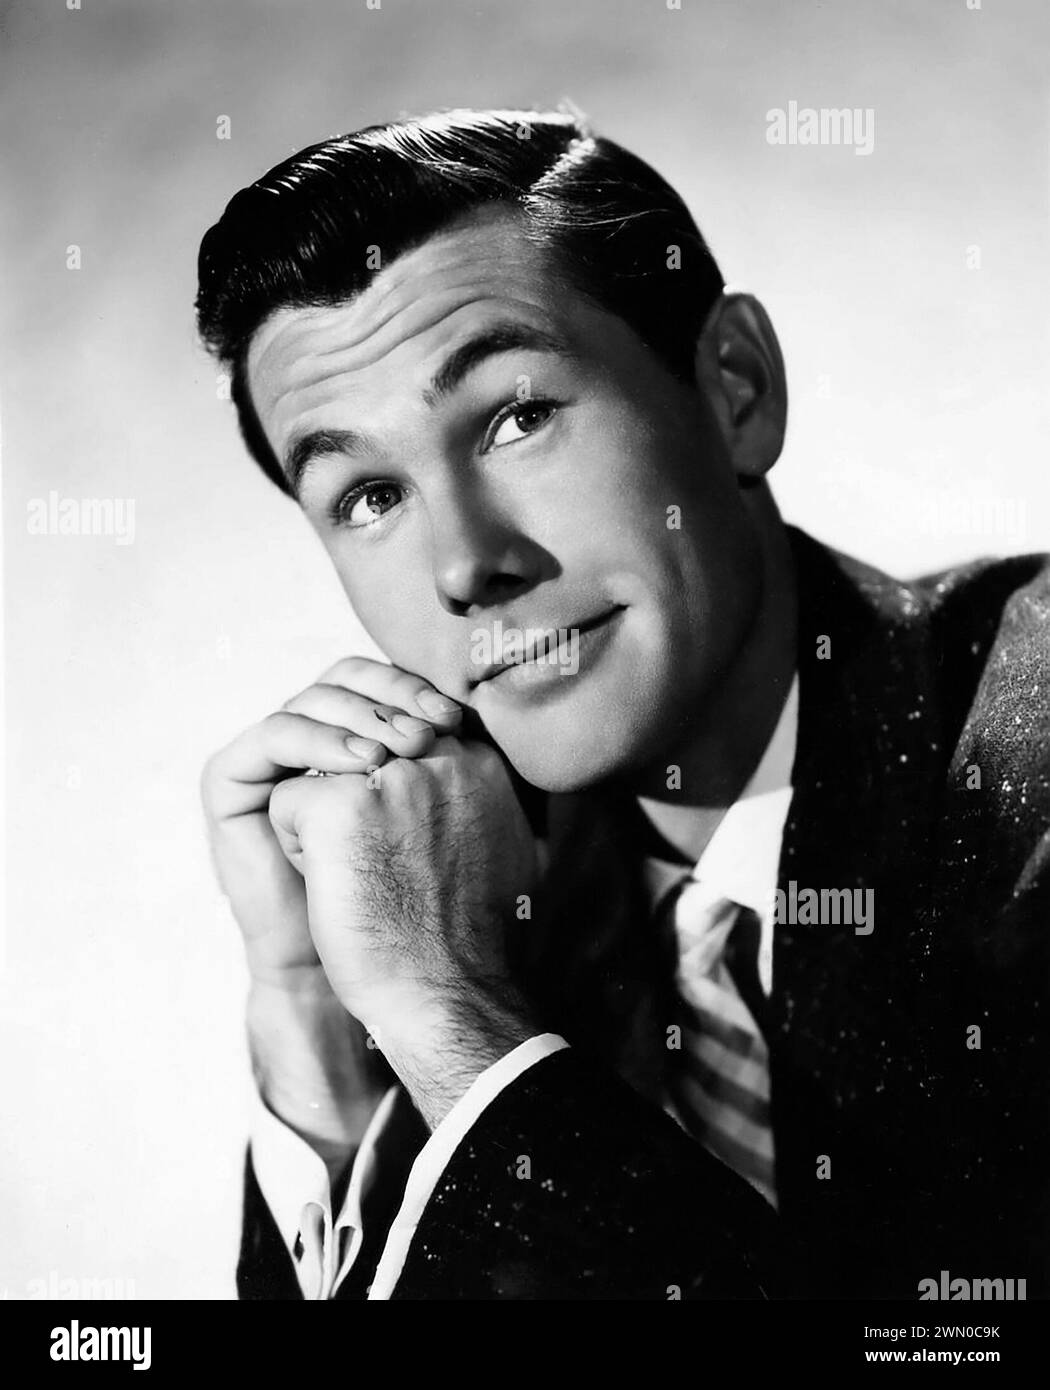 Johnny Carson. Portrait de l'animateur américain, comédien et écrivain John William Carson (1925-2005), photo publicitaire, 1957 Banque D'Images